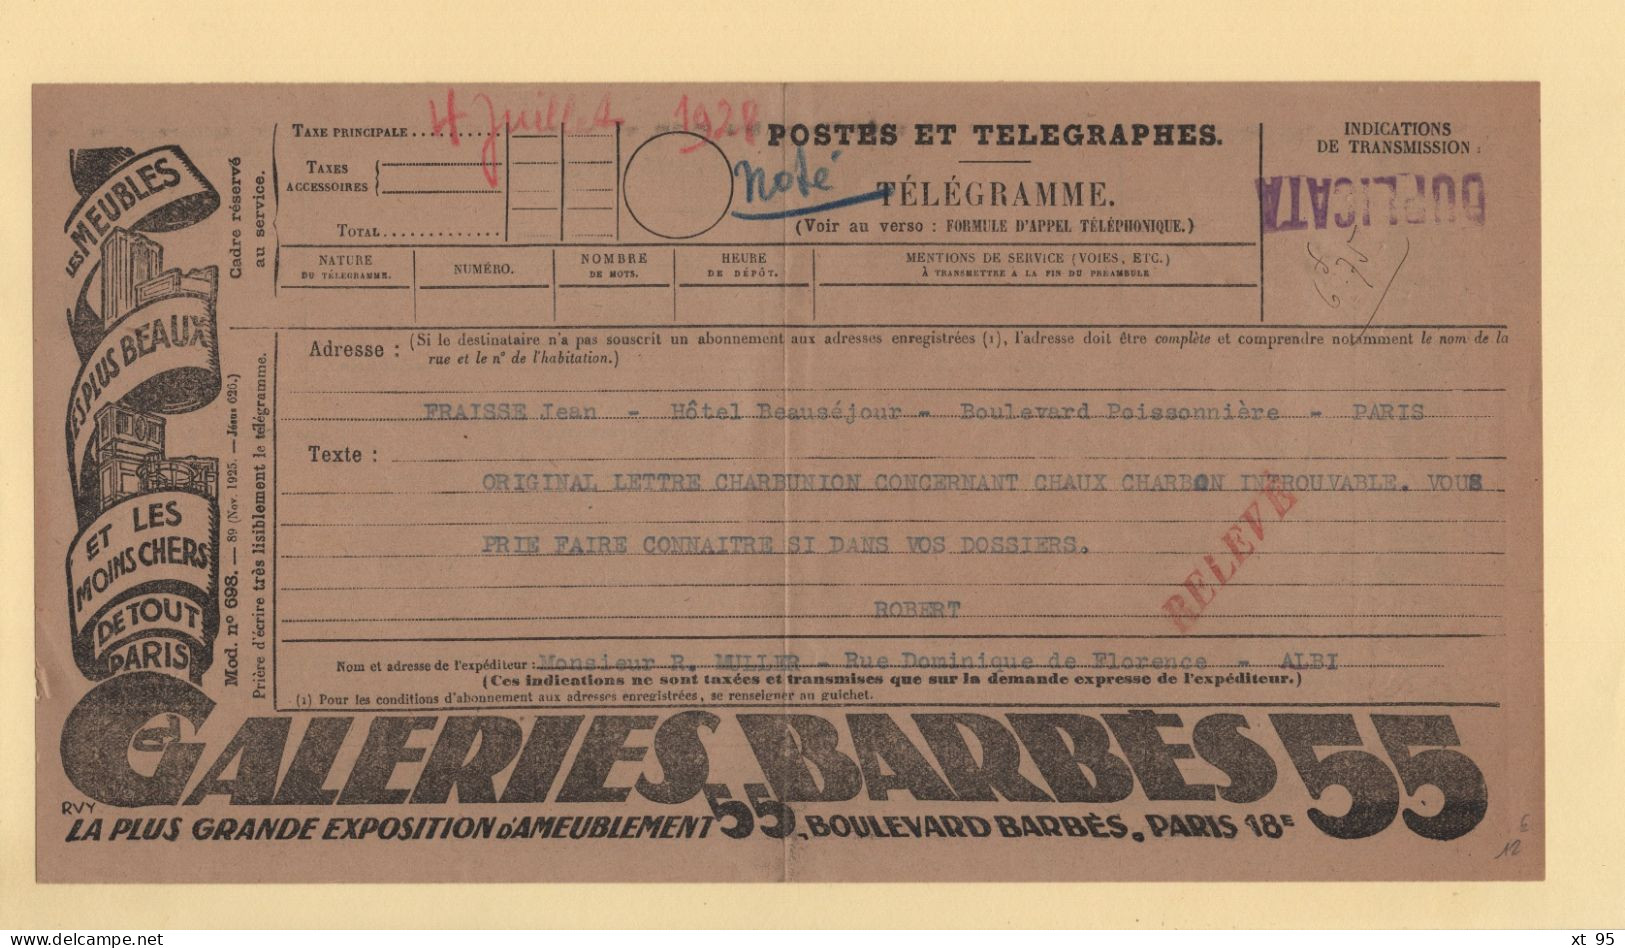 Telegramme Illustre - Galeries Barbes - 1928 - Duplicata - Telegraphie Und Telefon